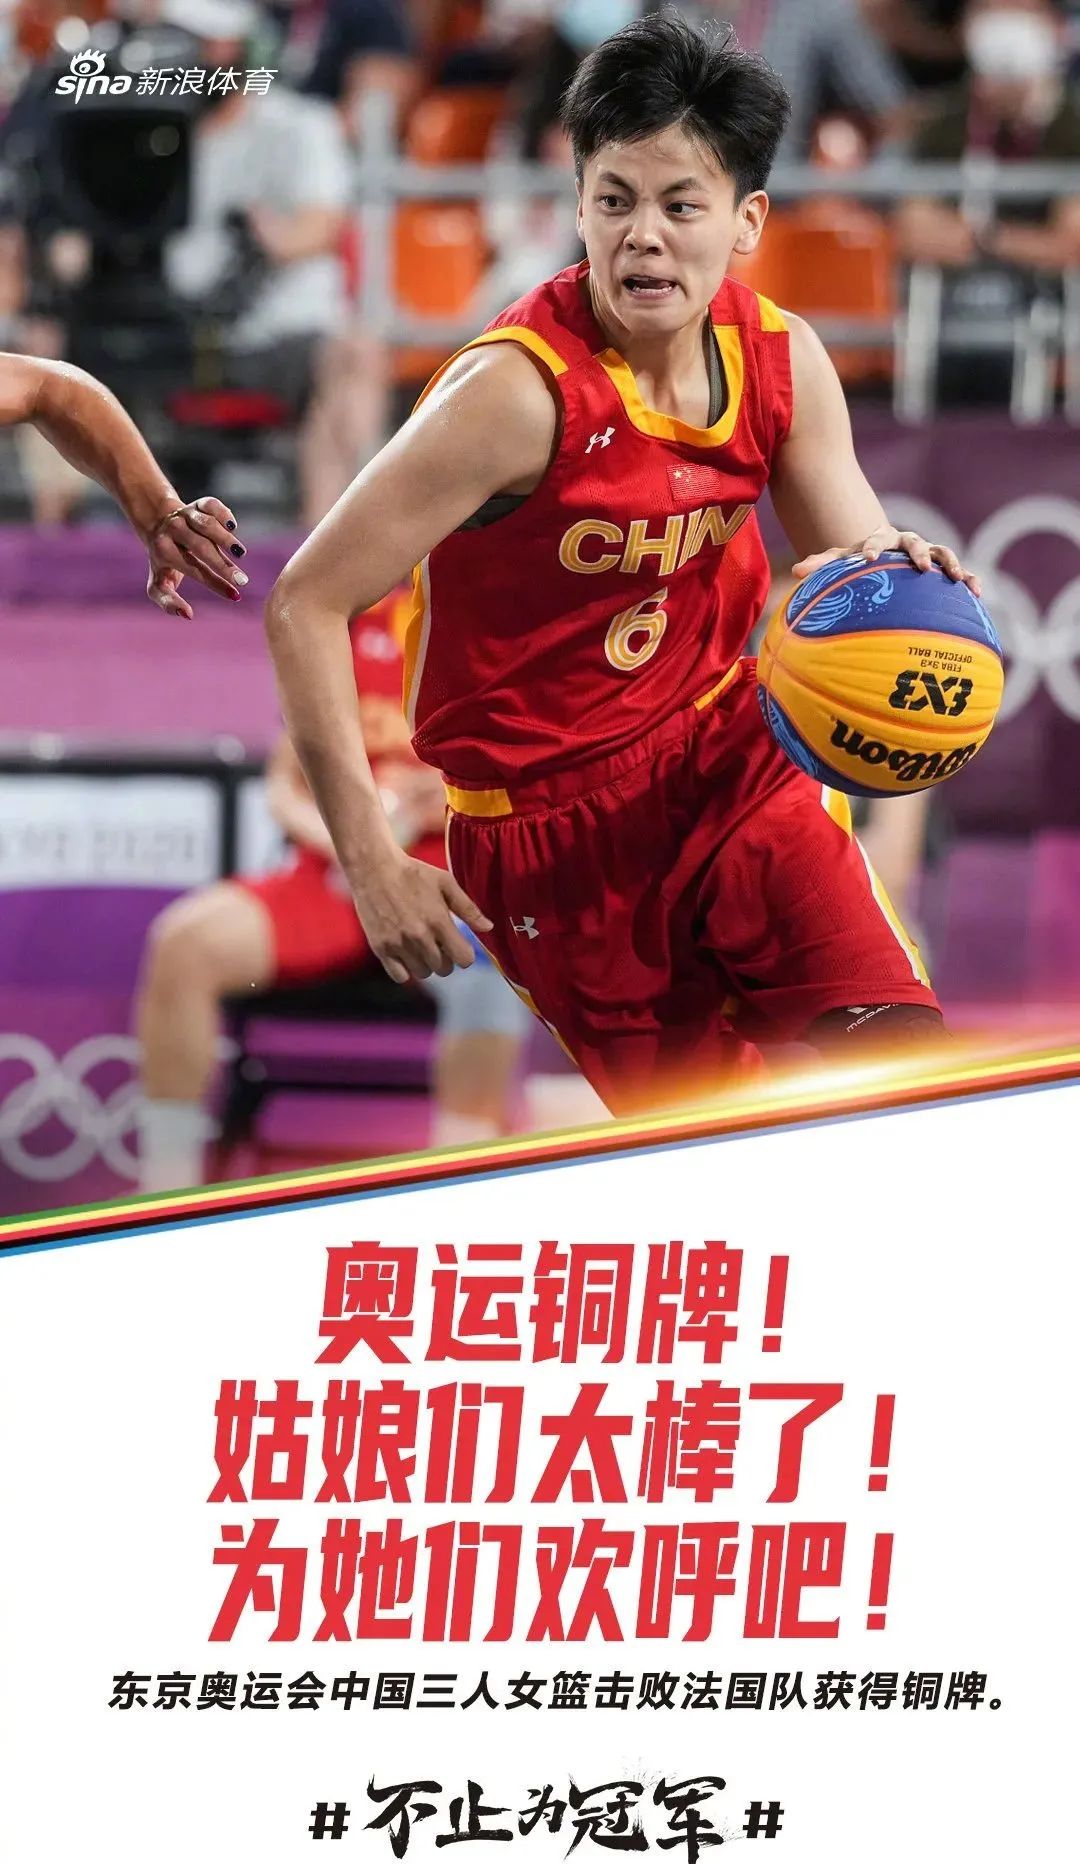 北京时间28日晚,在东京奥运会女子三人篮球比赛中,中国选手 王丽丽